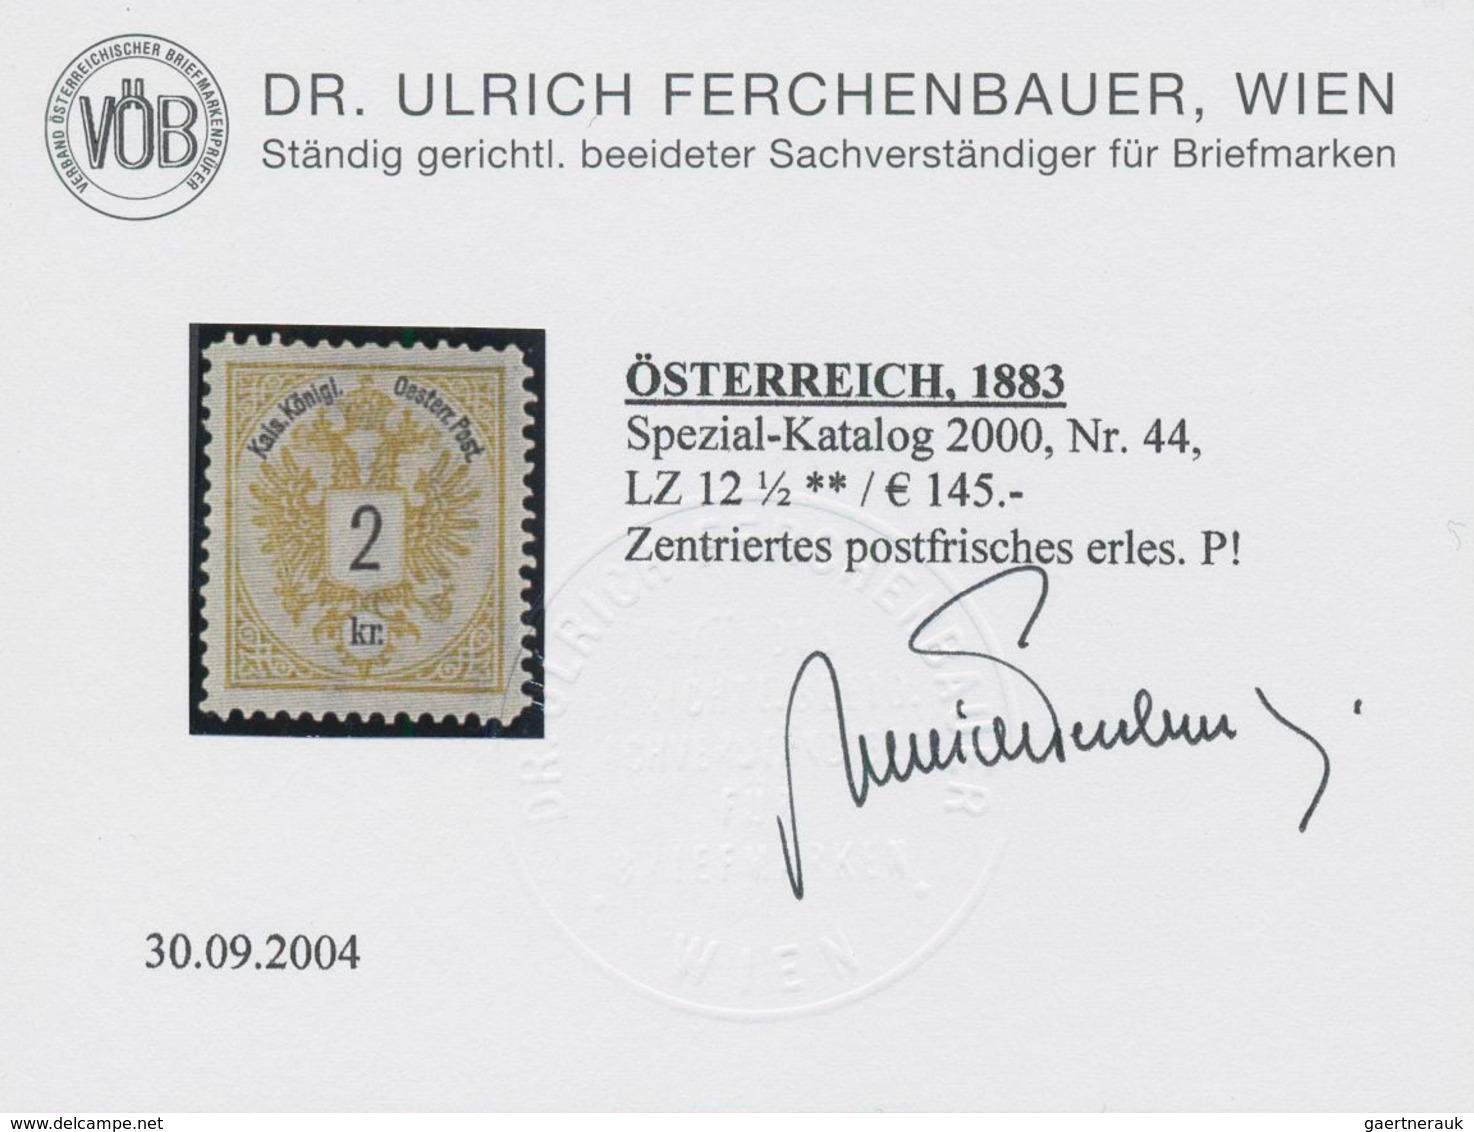 Österreich: 1883, Freimarken Doppeladler, 2 Kr. bis 10 Kr., vier Werte in Linienzähnung 12½, postfri